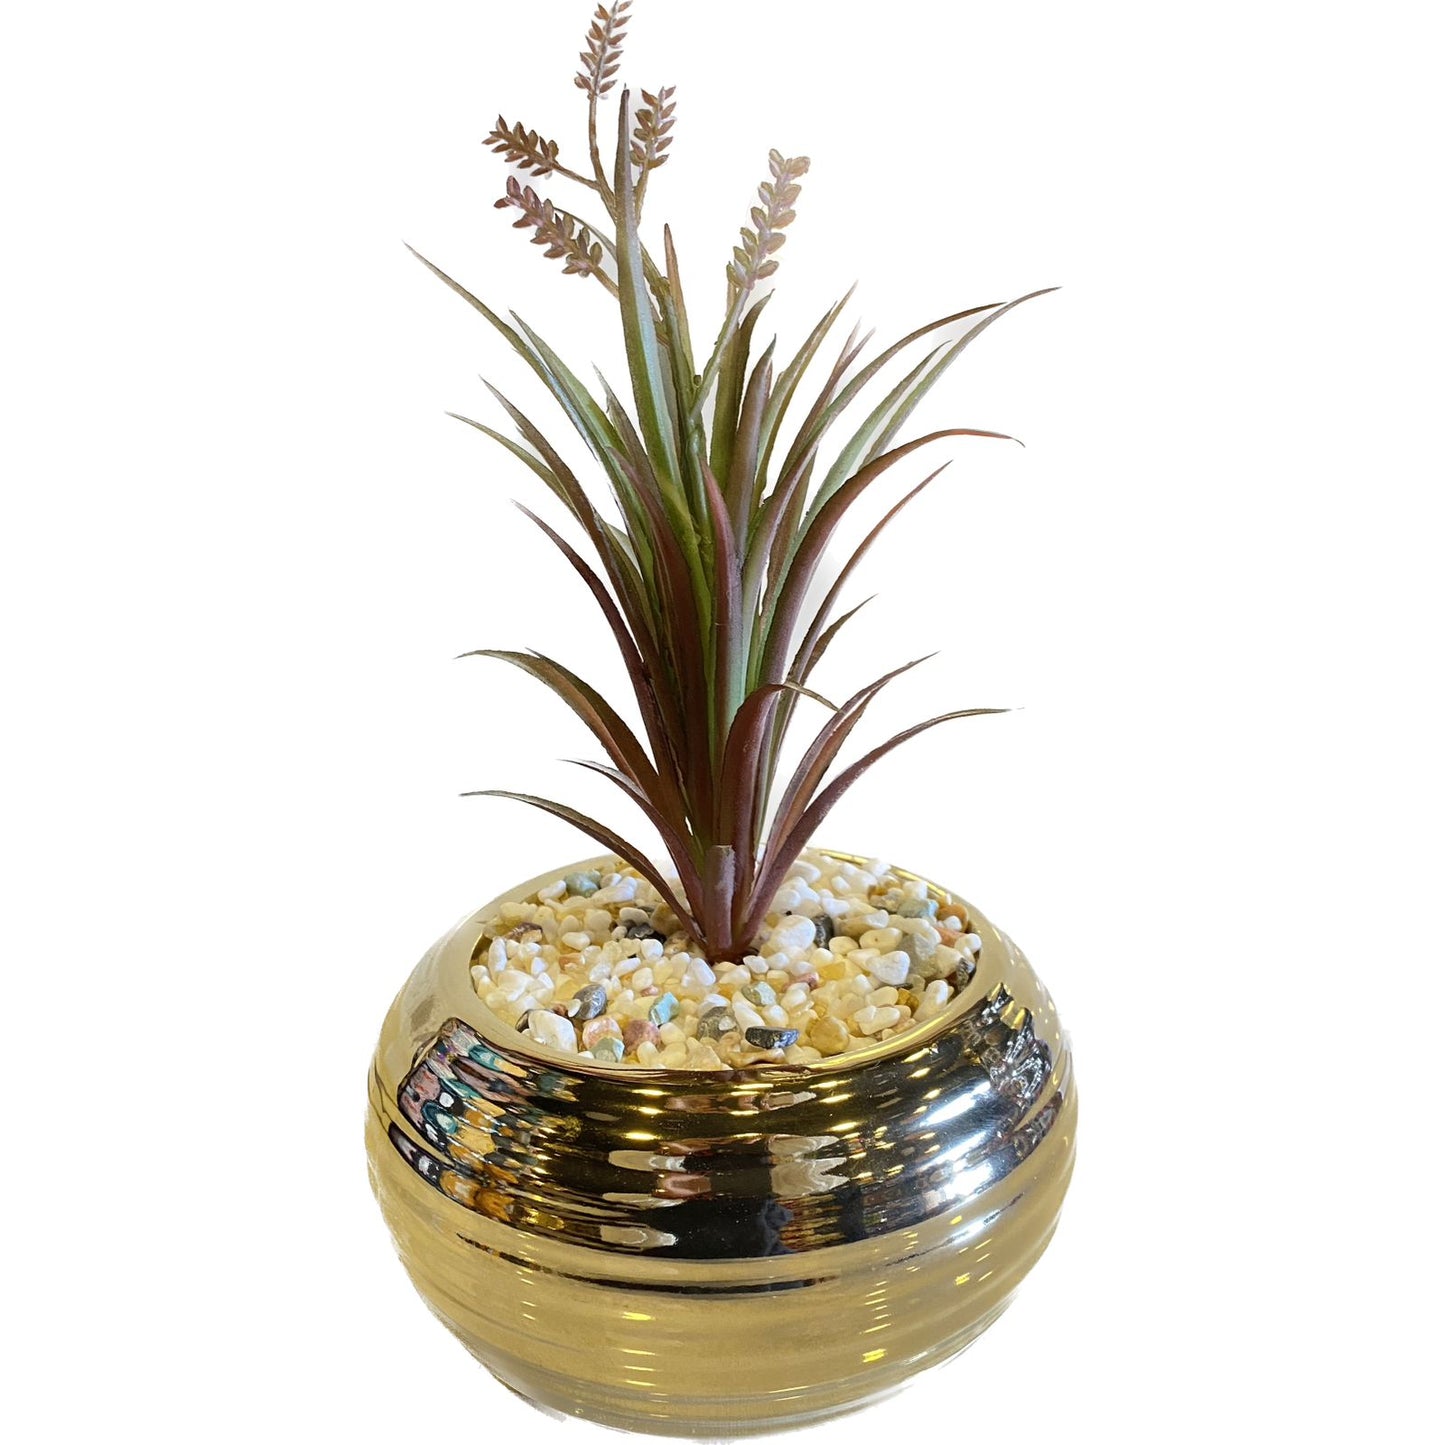 Artificial Decor Plant with Golden Pott